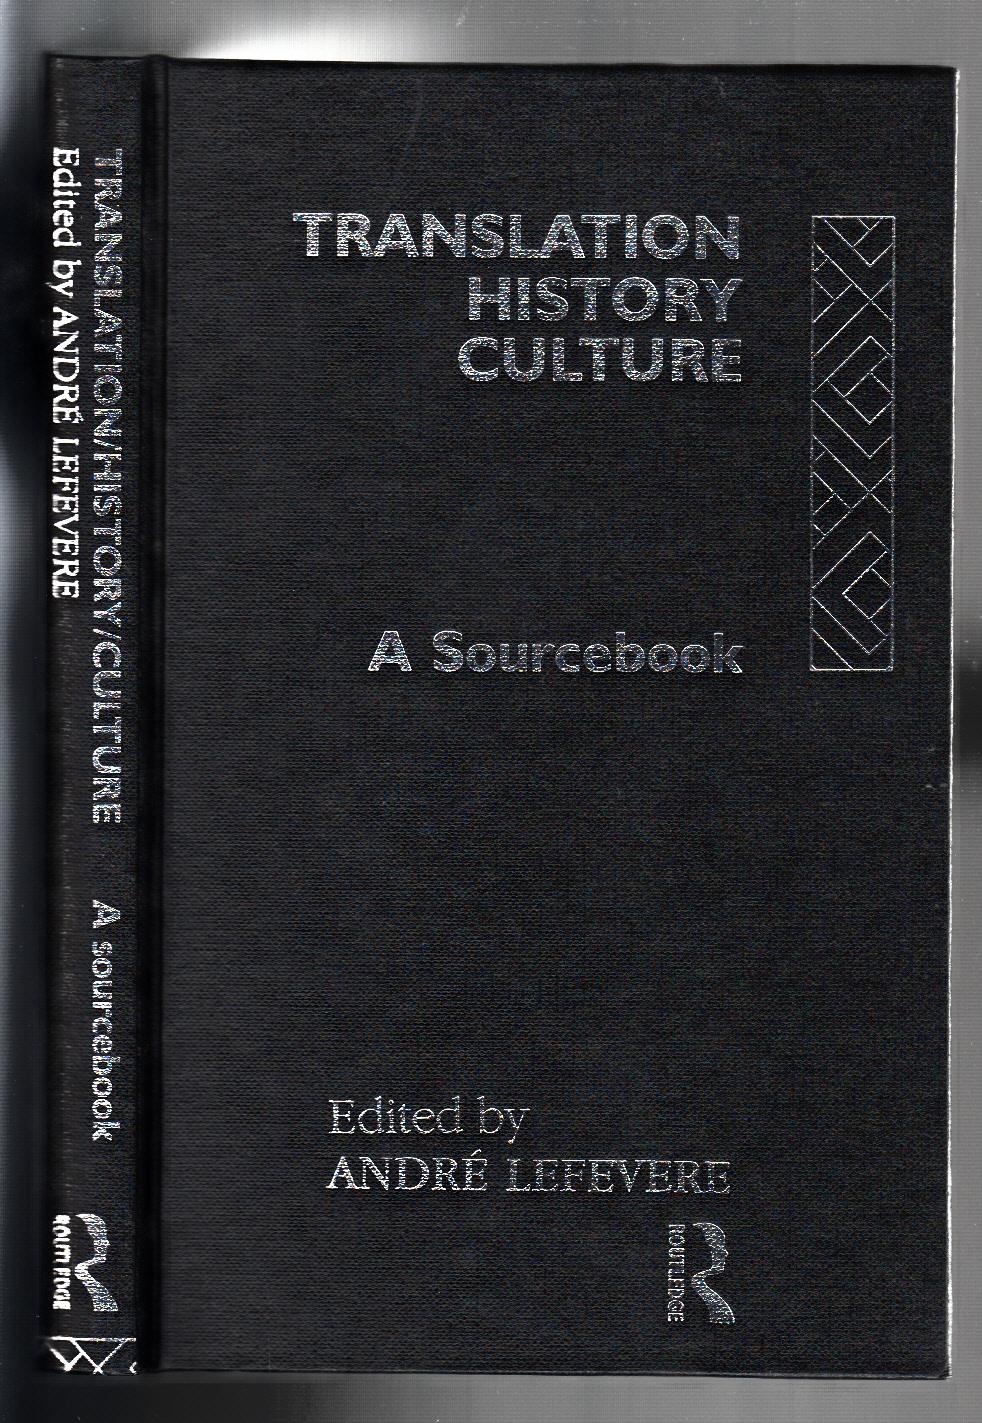 Translation/History/Culture: A Sourcebook (Translation Studies) - André Lefevere (Editor)